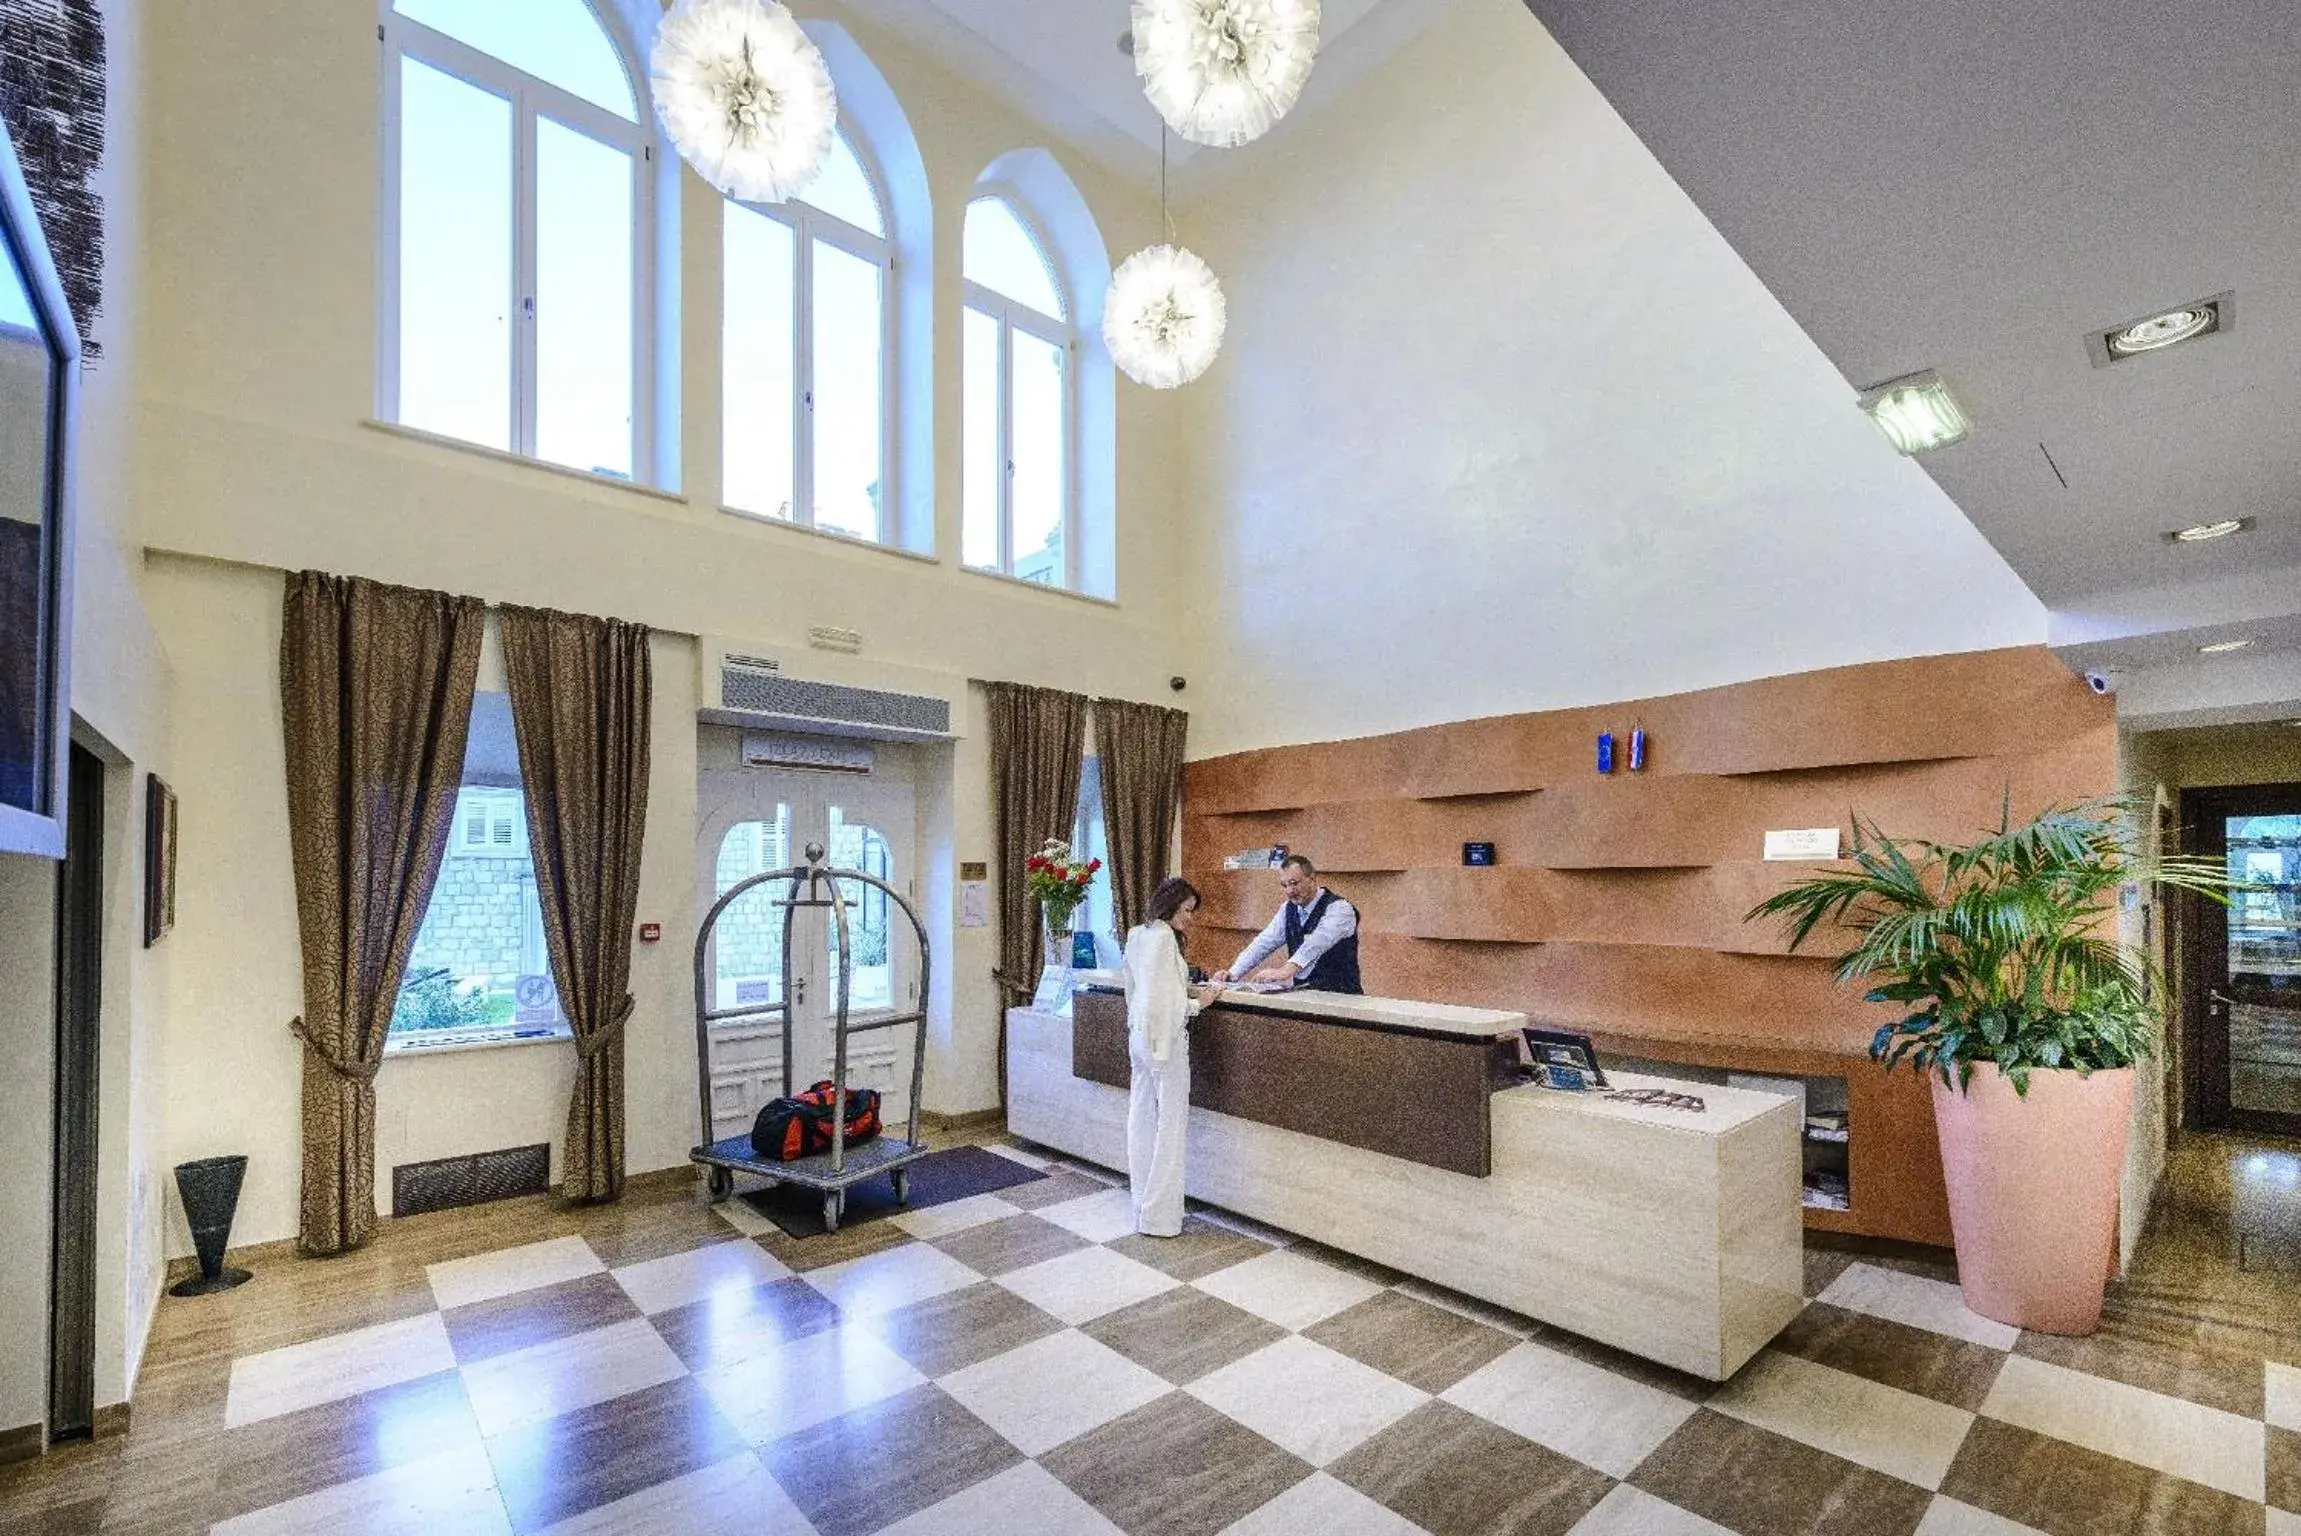 Lobby or reception, Lobby/Reception in Hotel Lapad